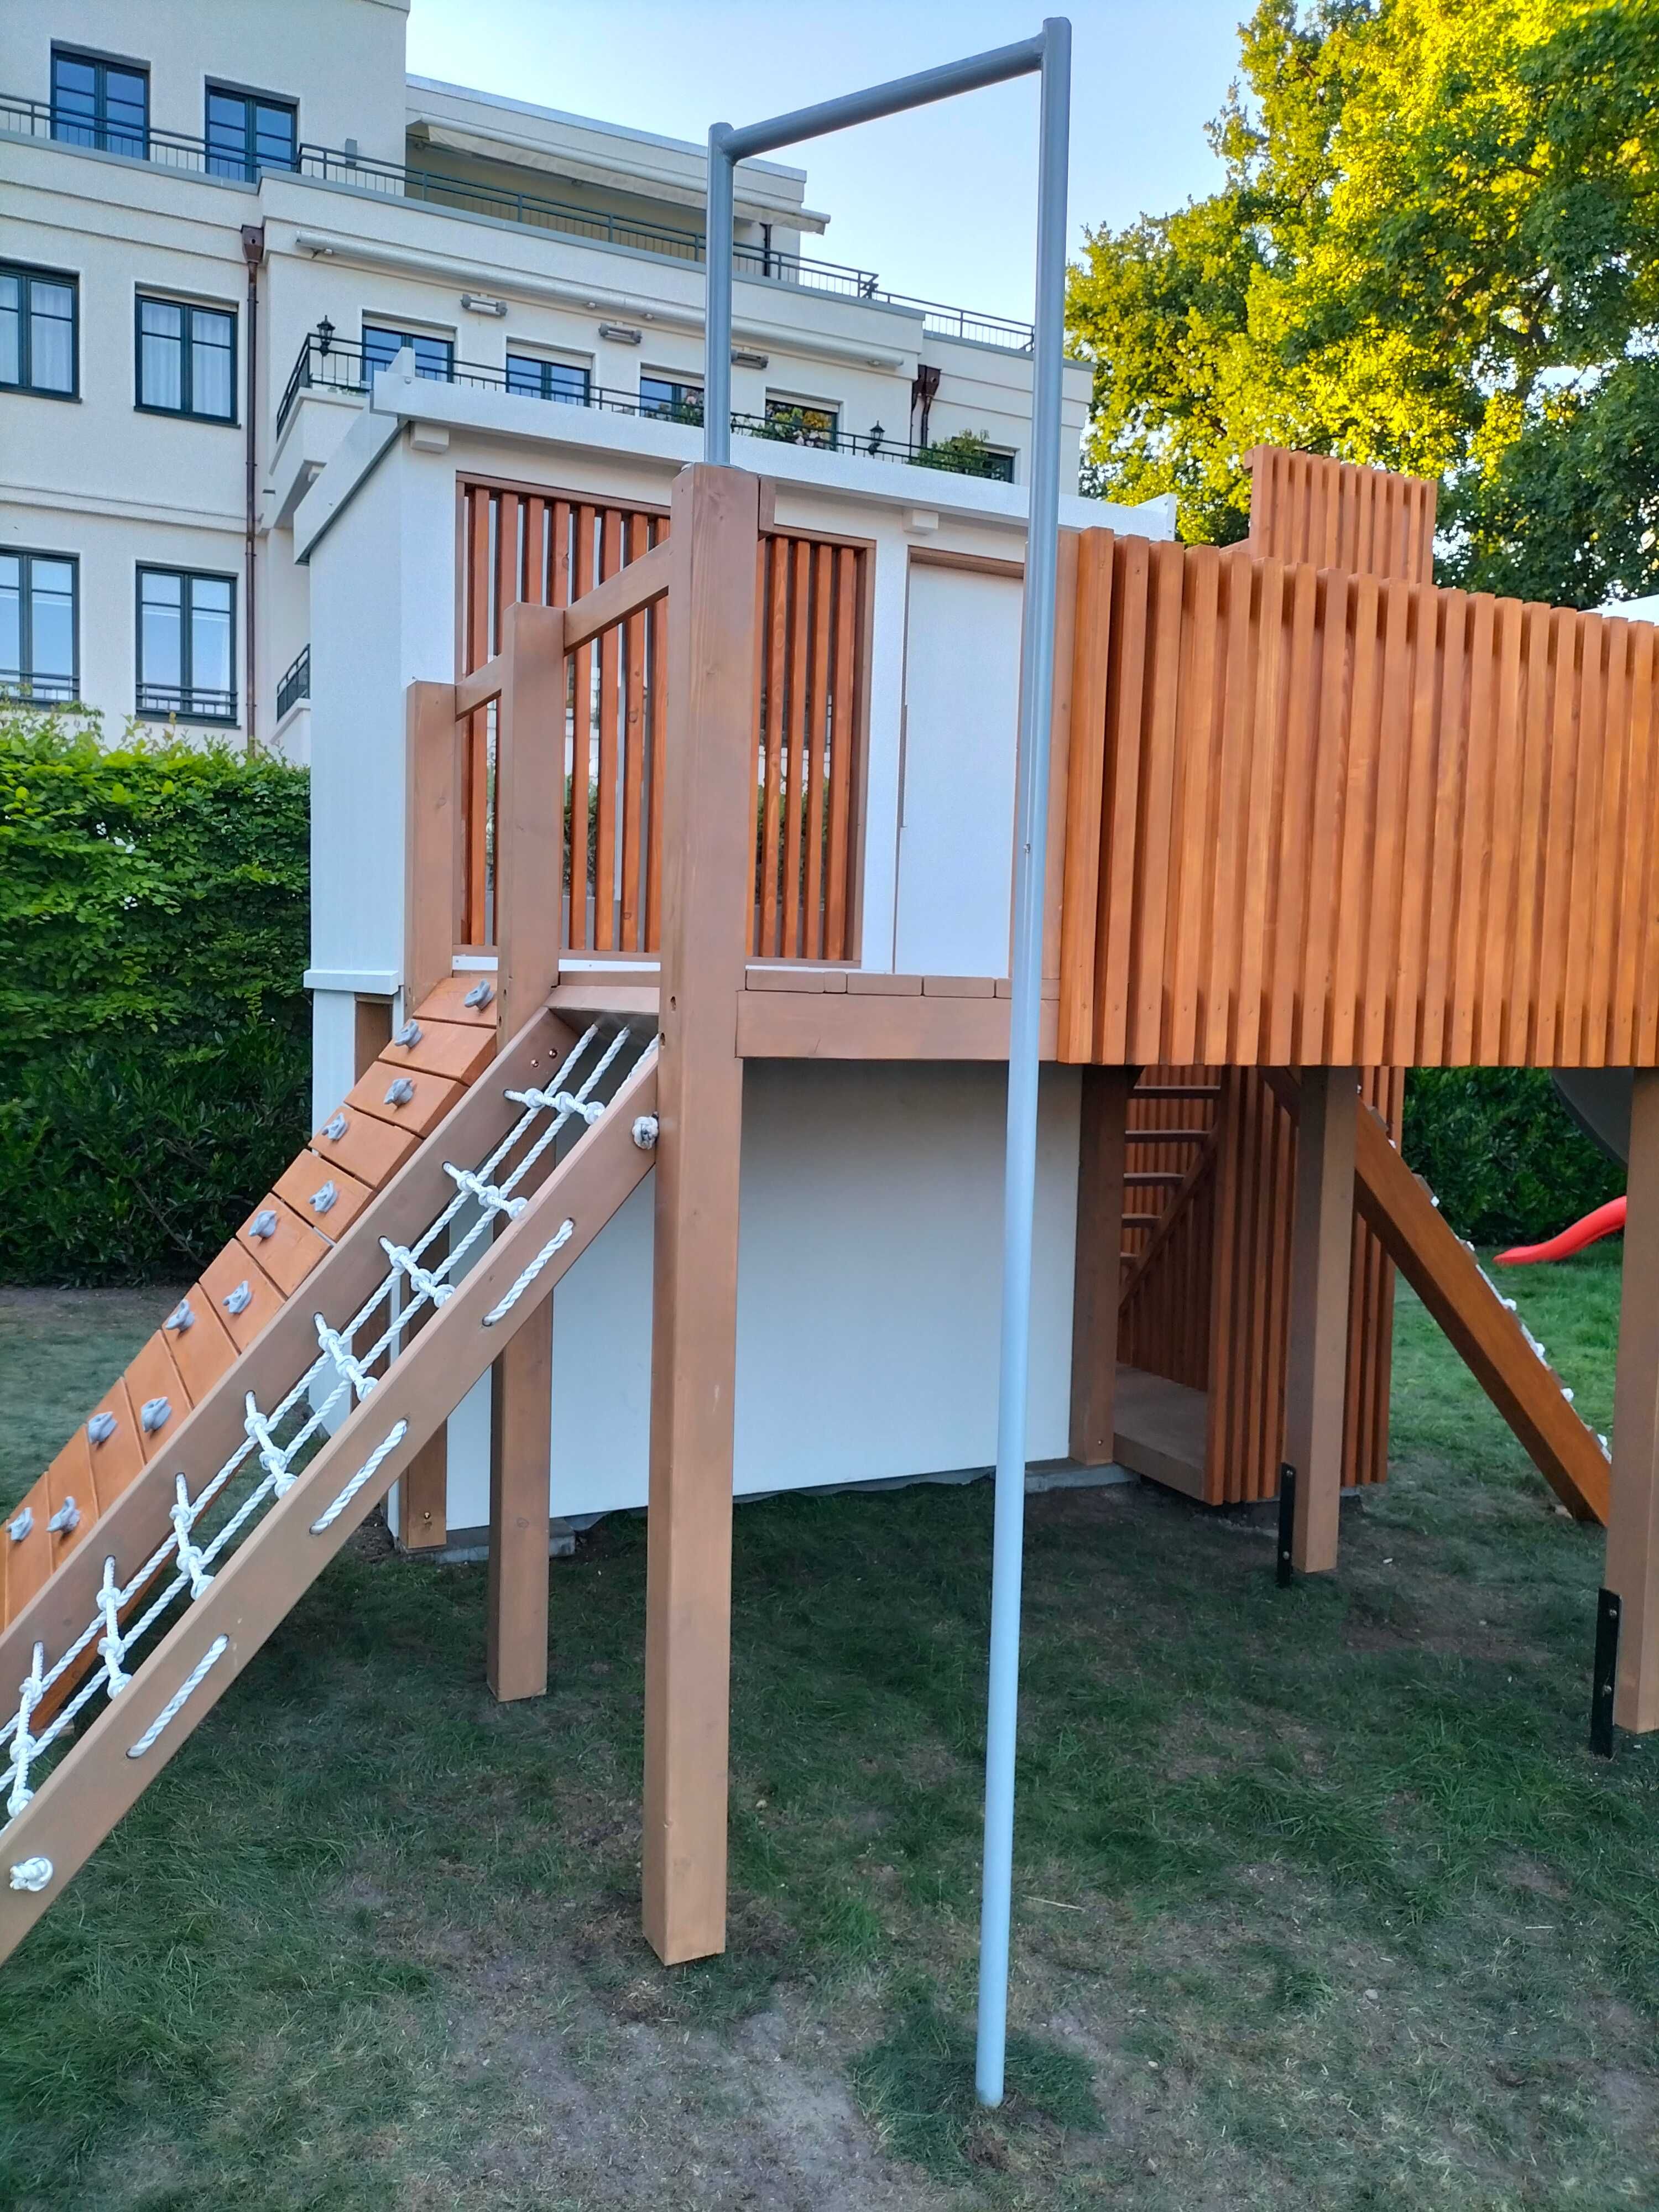 Drewniany domek dla dzieci D05 NOWOCZESNY plac zabaw